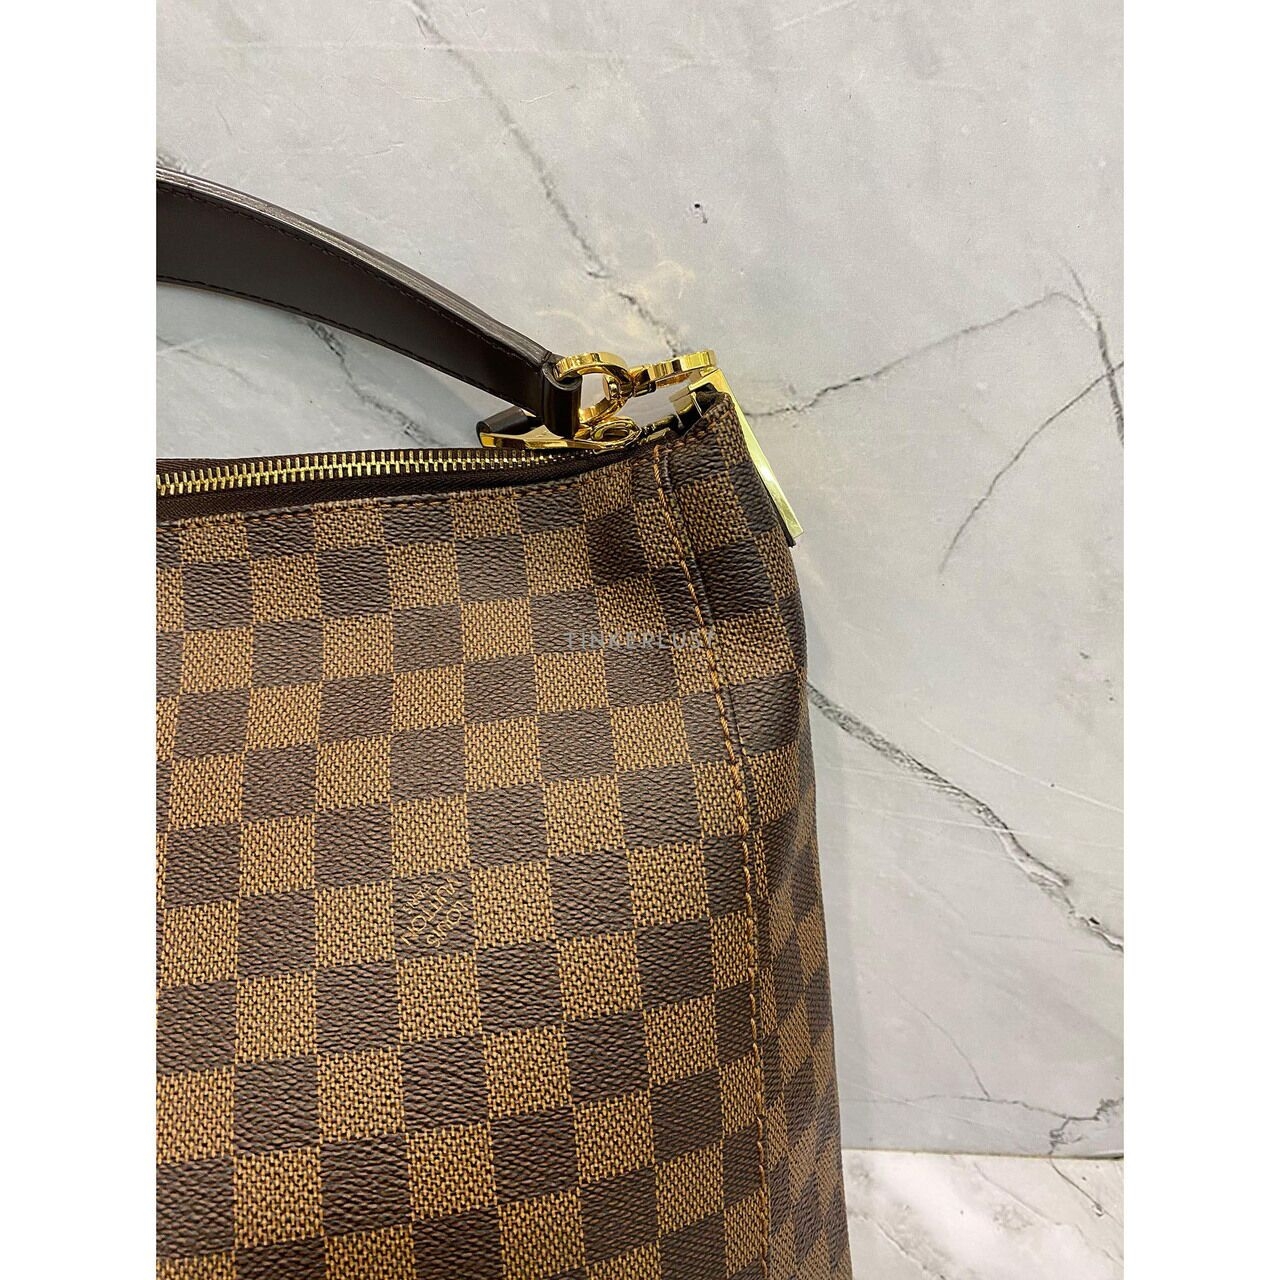 Louis Vuitton Portobello PM Damier GHW 2013 Handbag